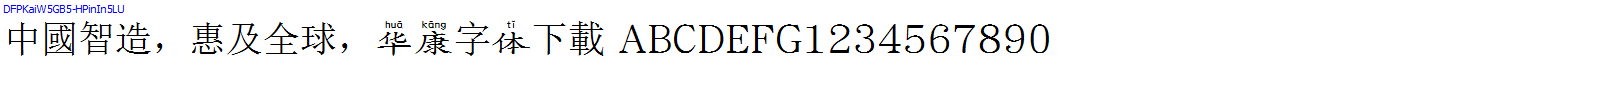 華康字體DFPKaiW5GB5-HPinIn5LU.TTF